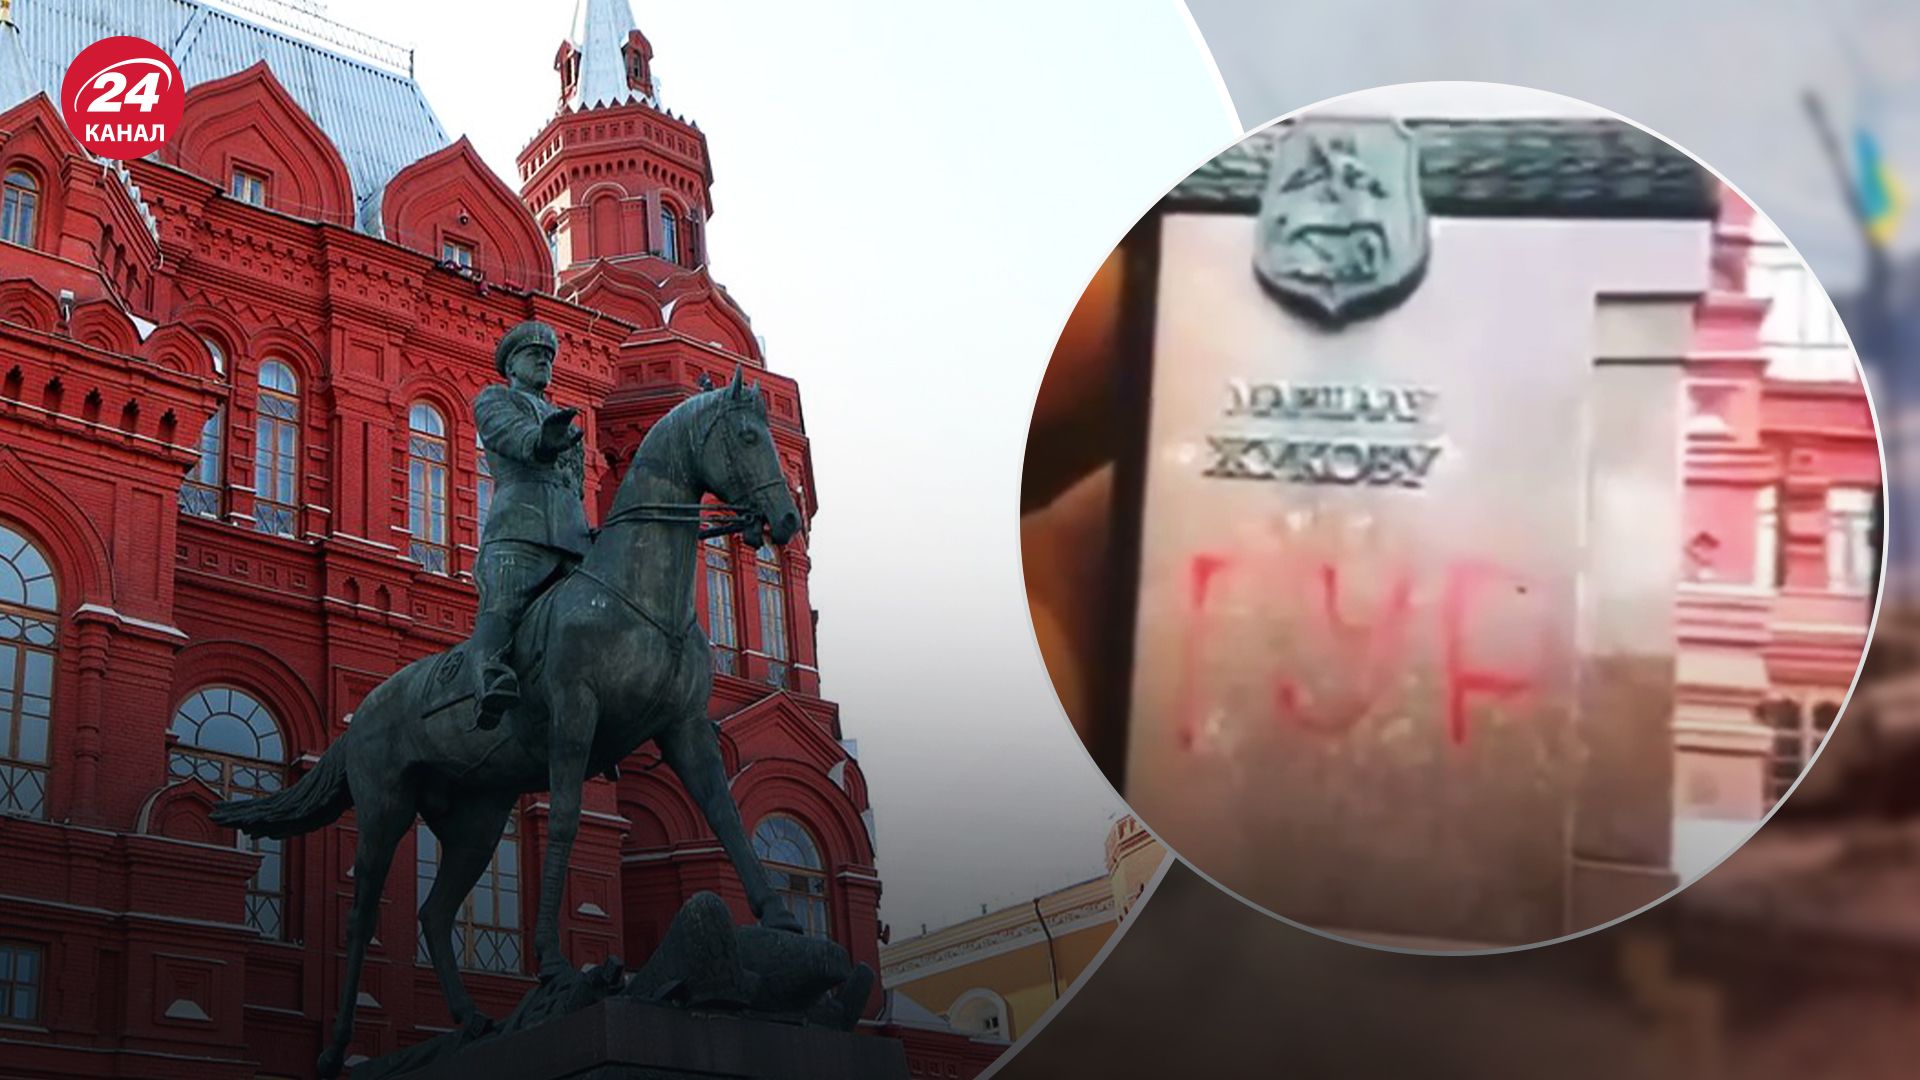 Надпись "ГУР" на памятнике Жукову